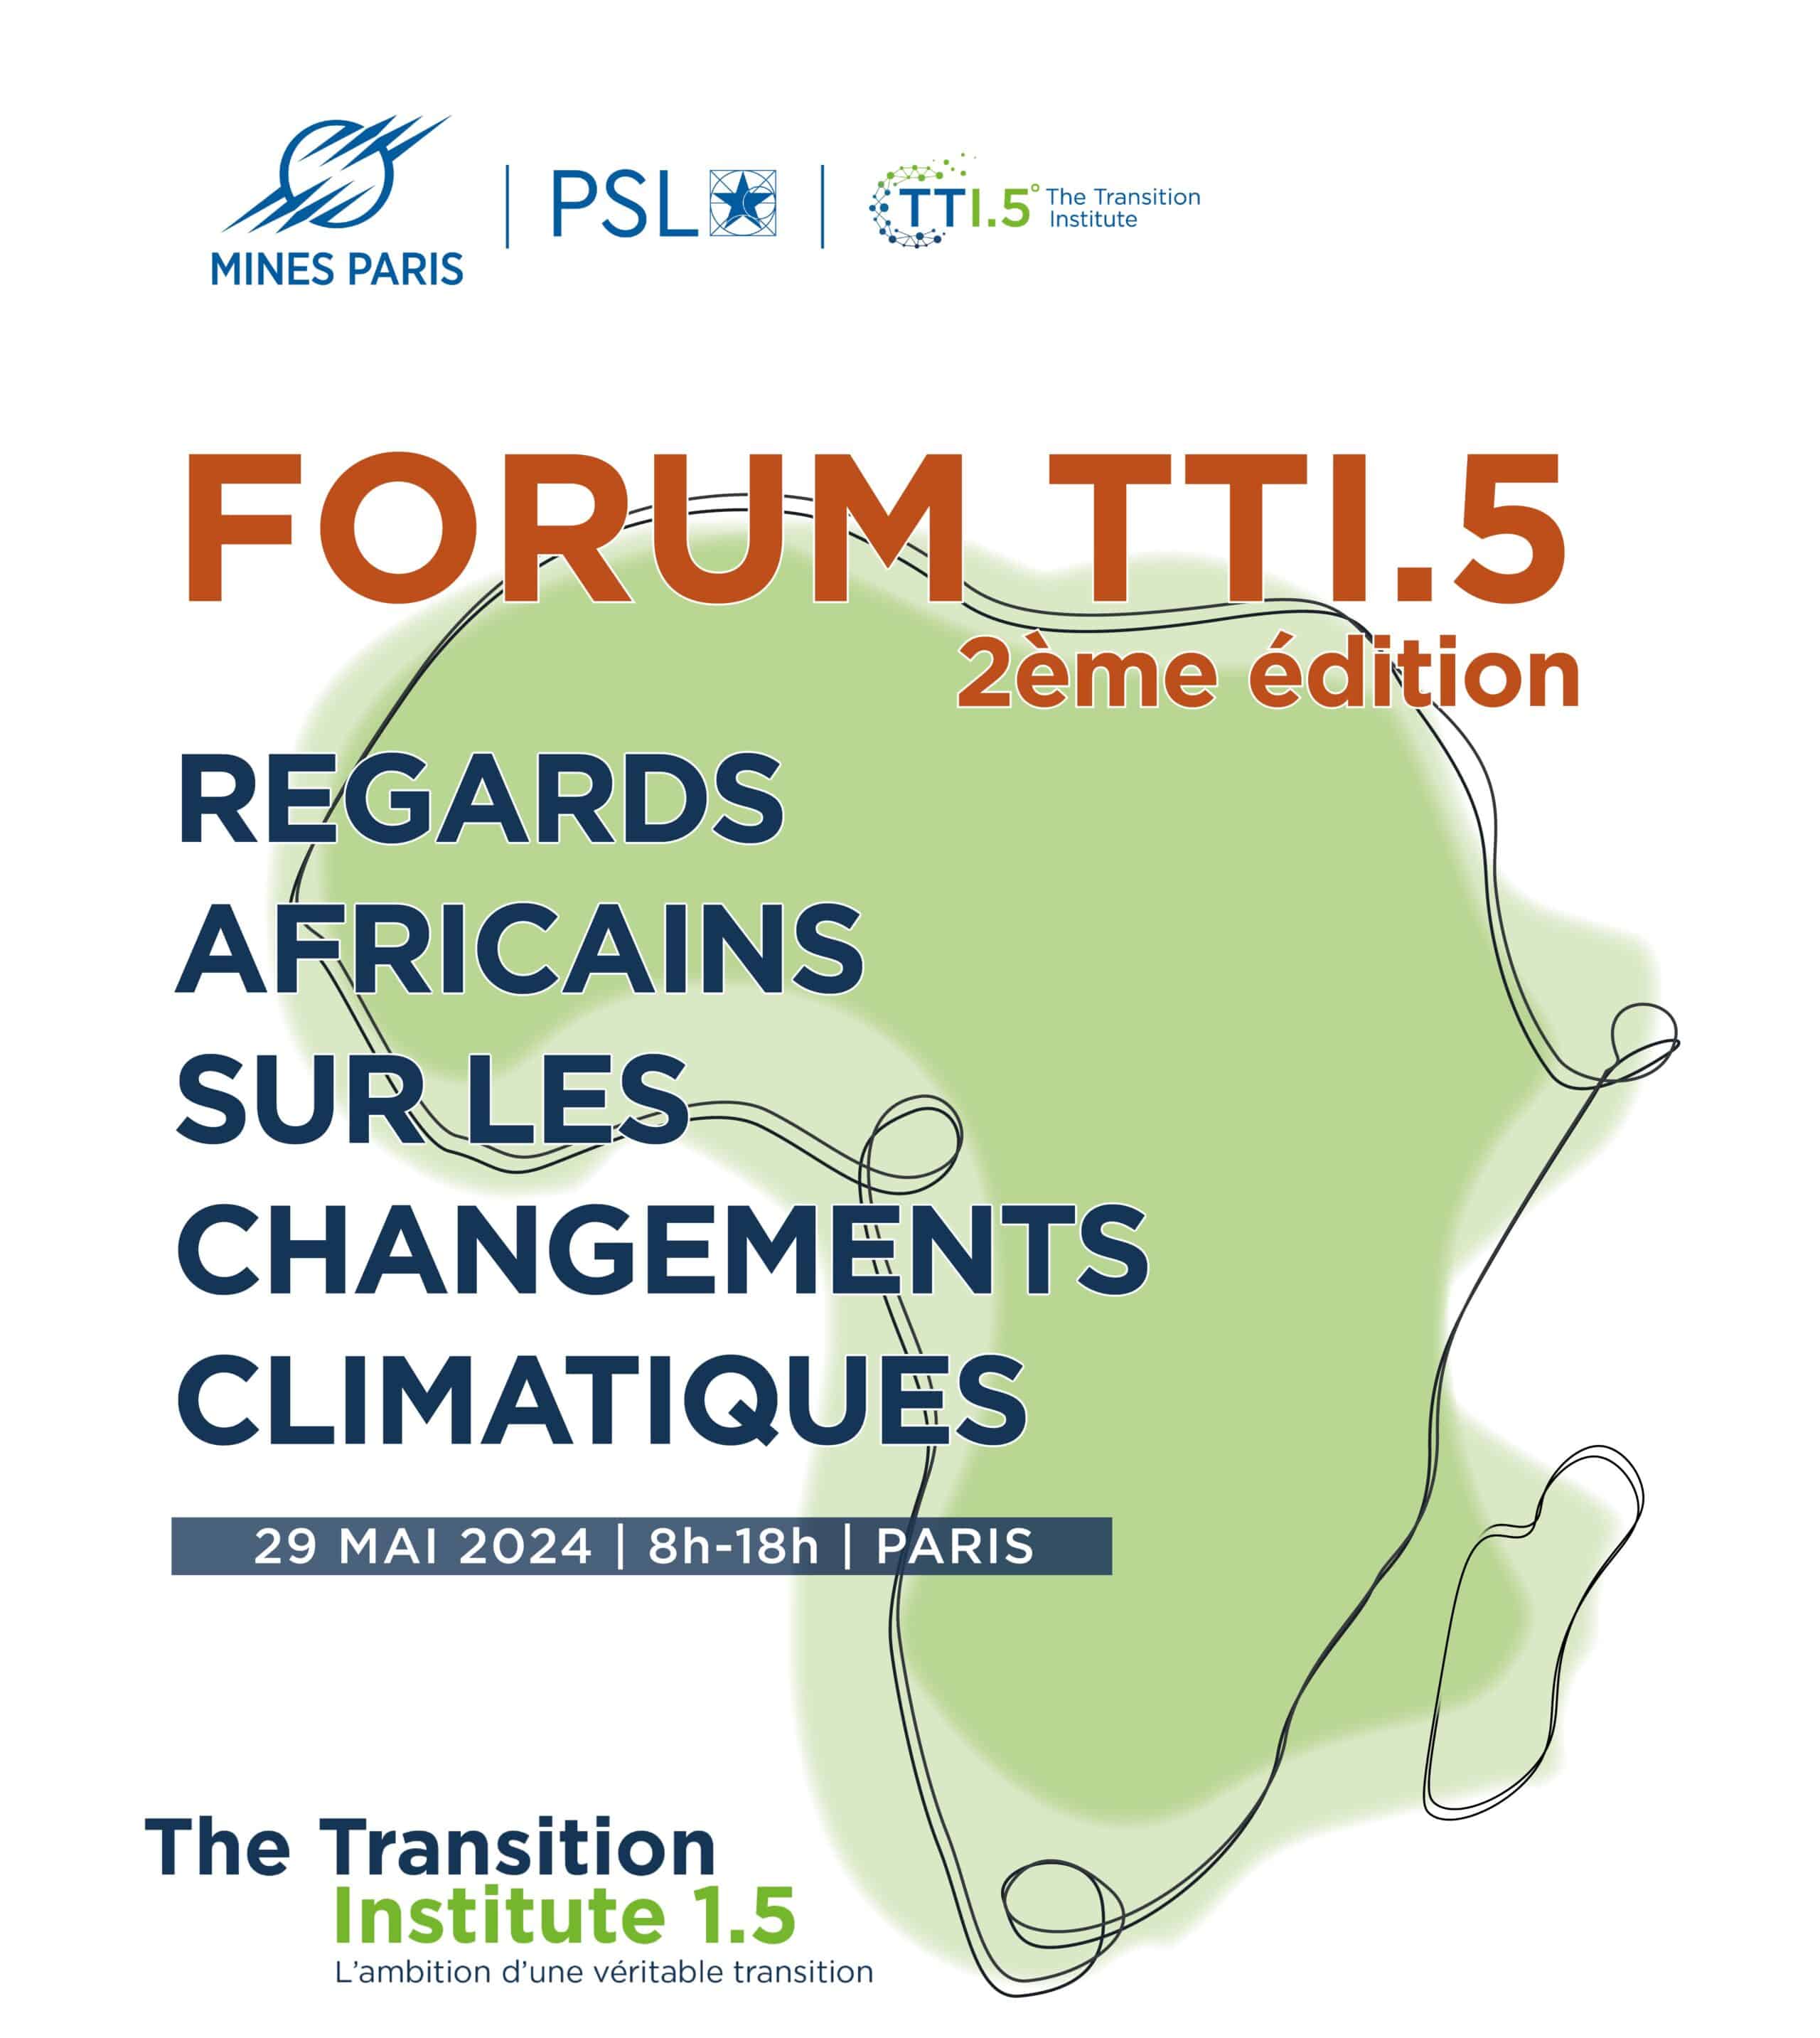 Mines Paris – PSL et The Transition Institute 1.5 vous convient au forum annuel sur les enjeux de transition « Regards Africains sur les Changements Climatiques » le 29 mai